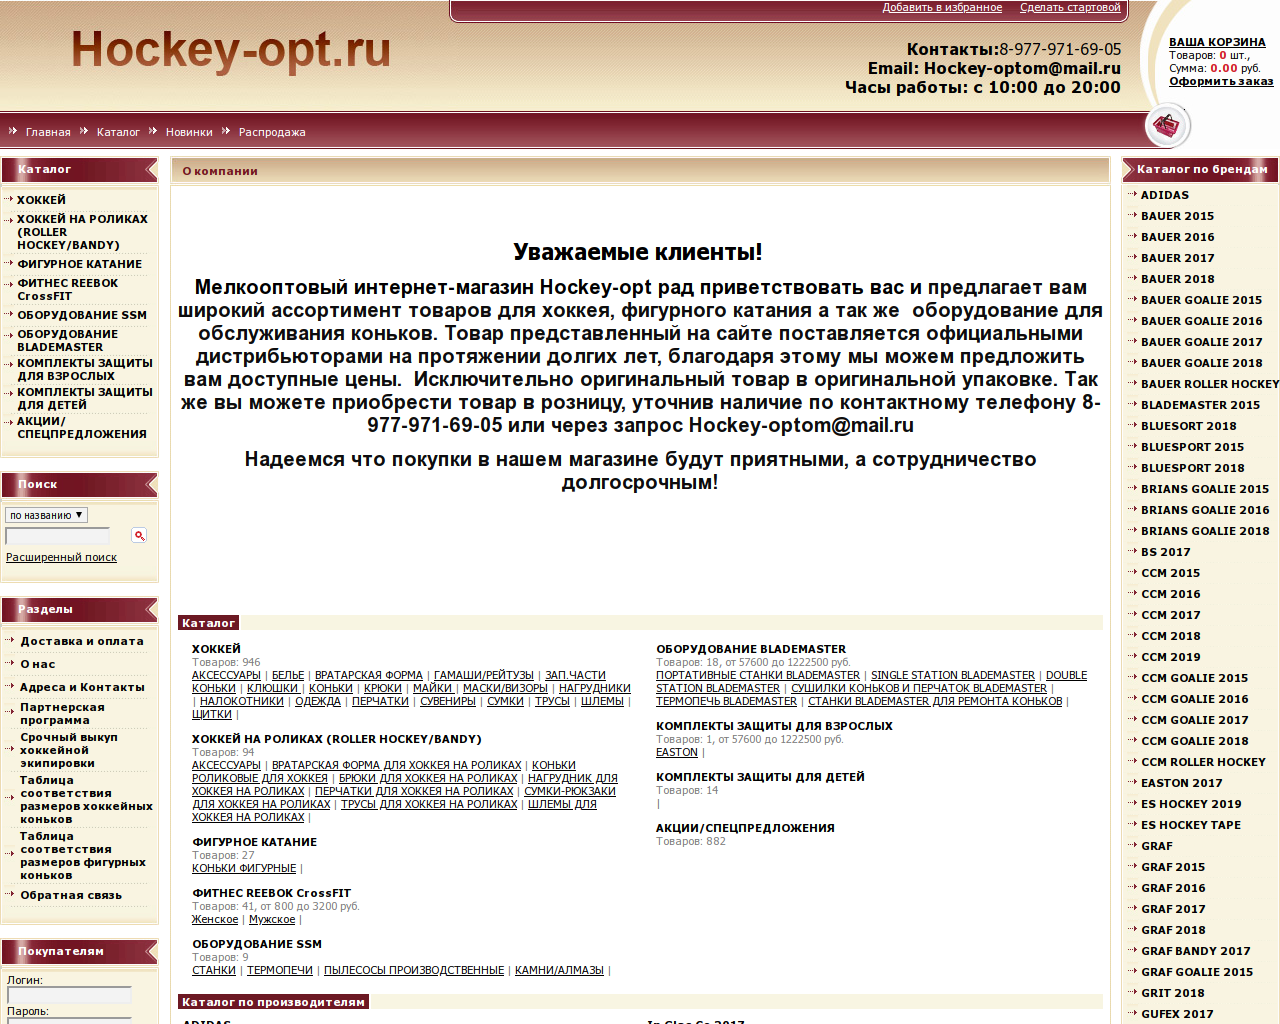 Изображение сайта hockey-opt.ru в разрешении 1280x1024